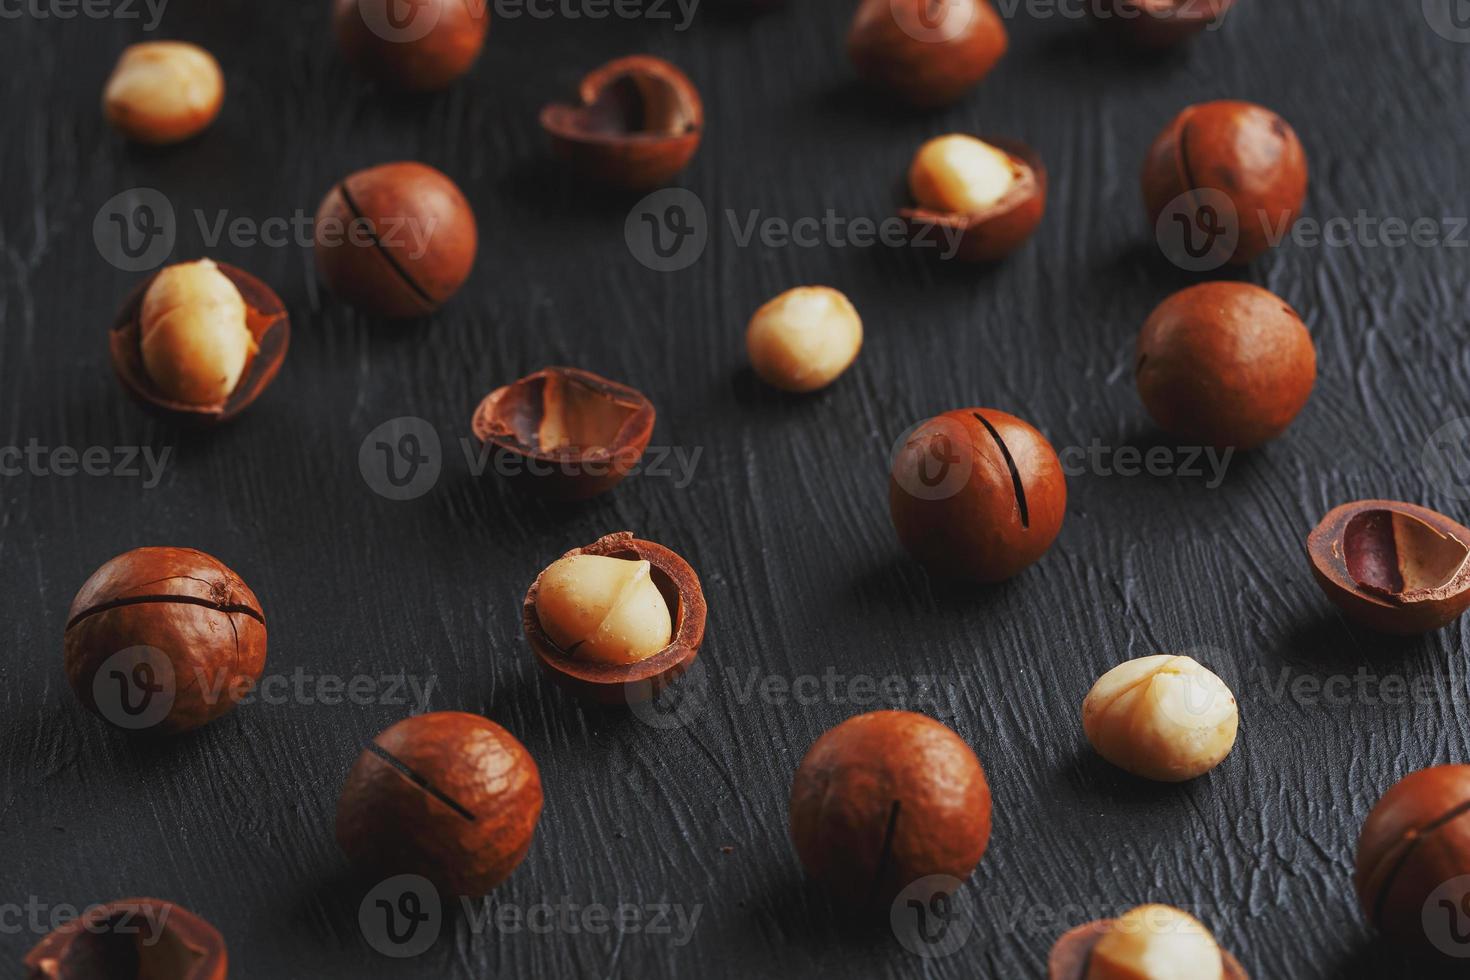 renades och skal upprepningar macadamia nötter på svart textural sten bakgrund. friska äter begrepp. låg kontrast foto